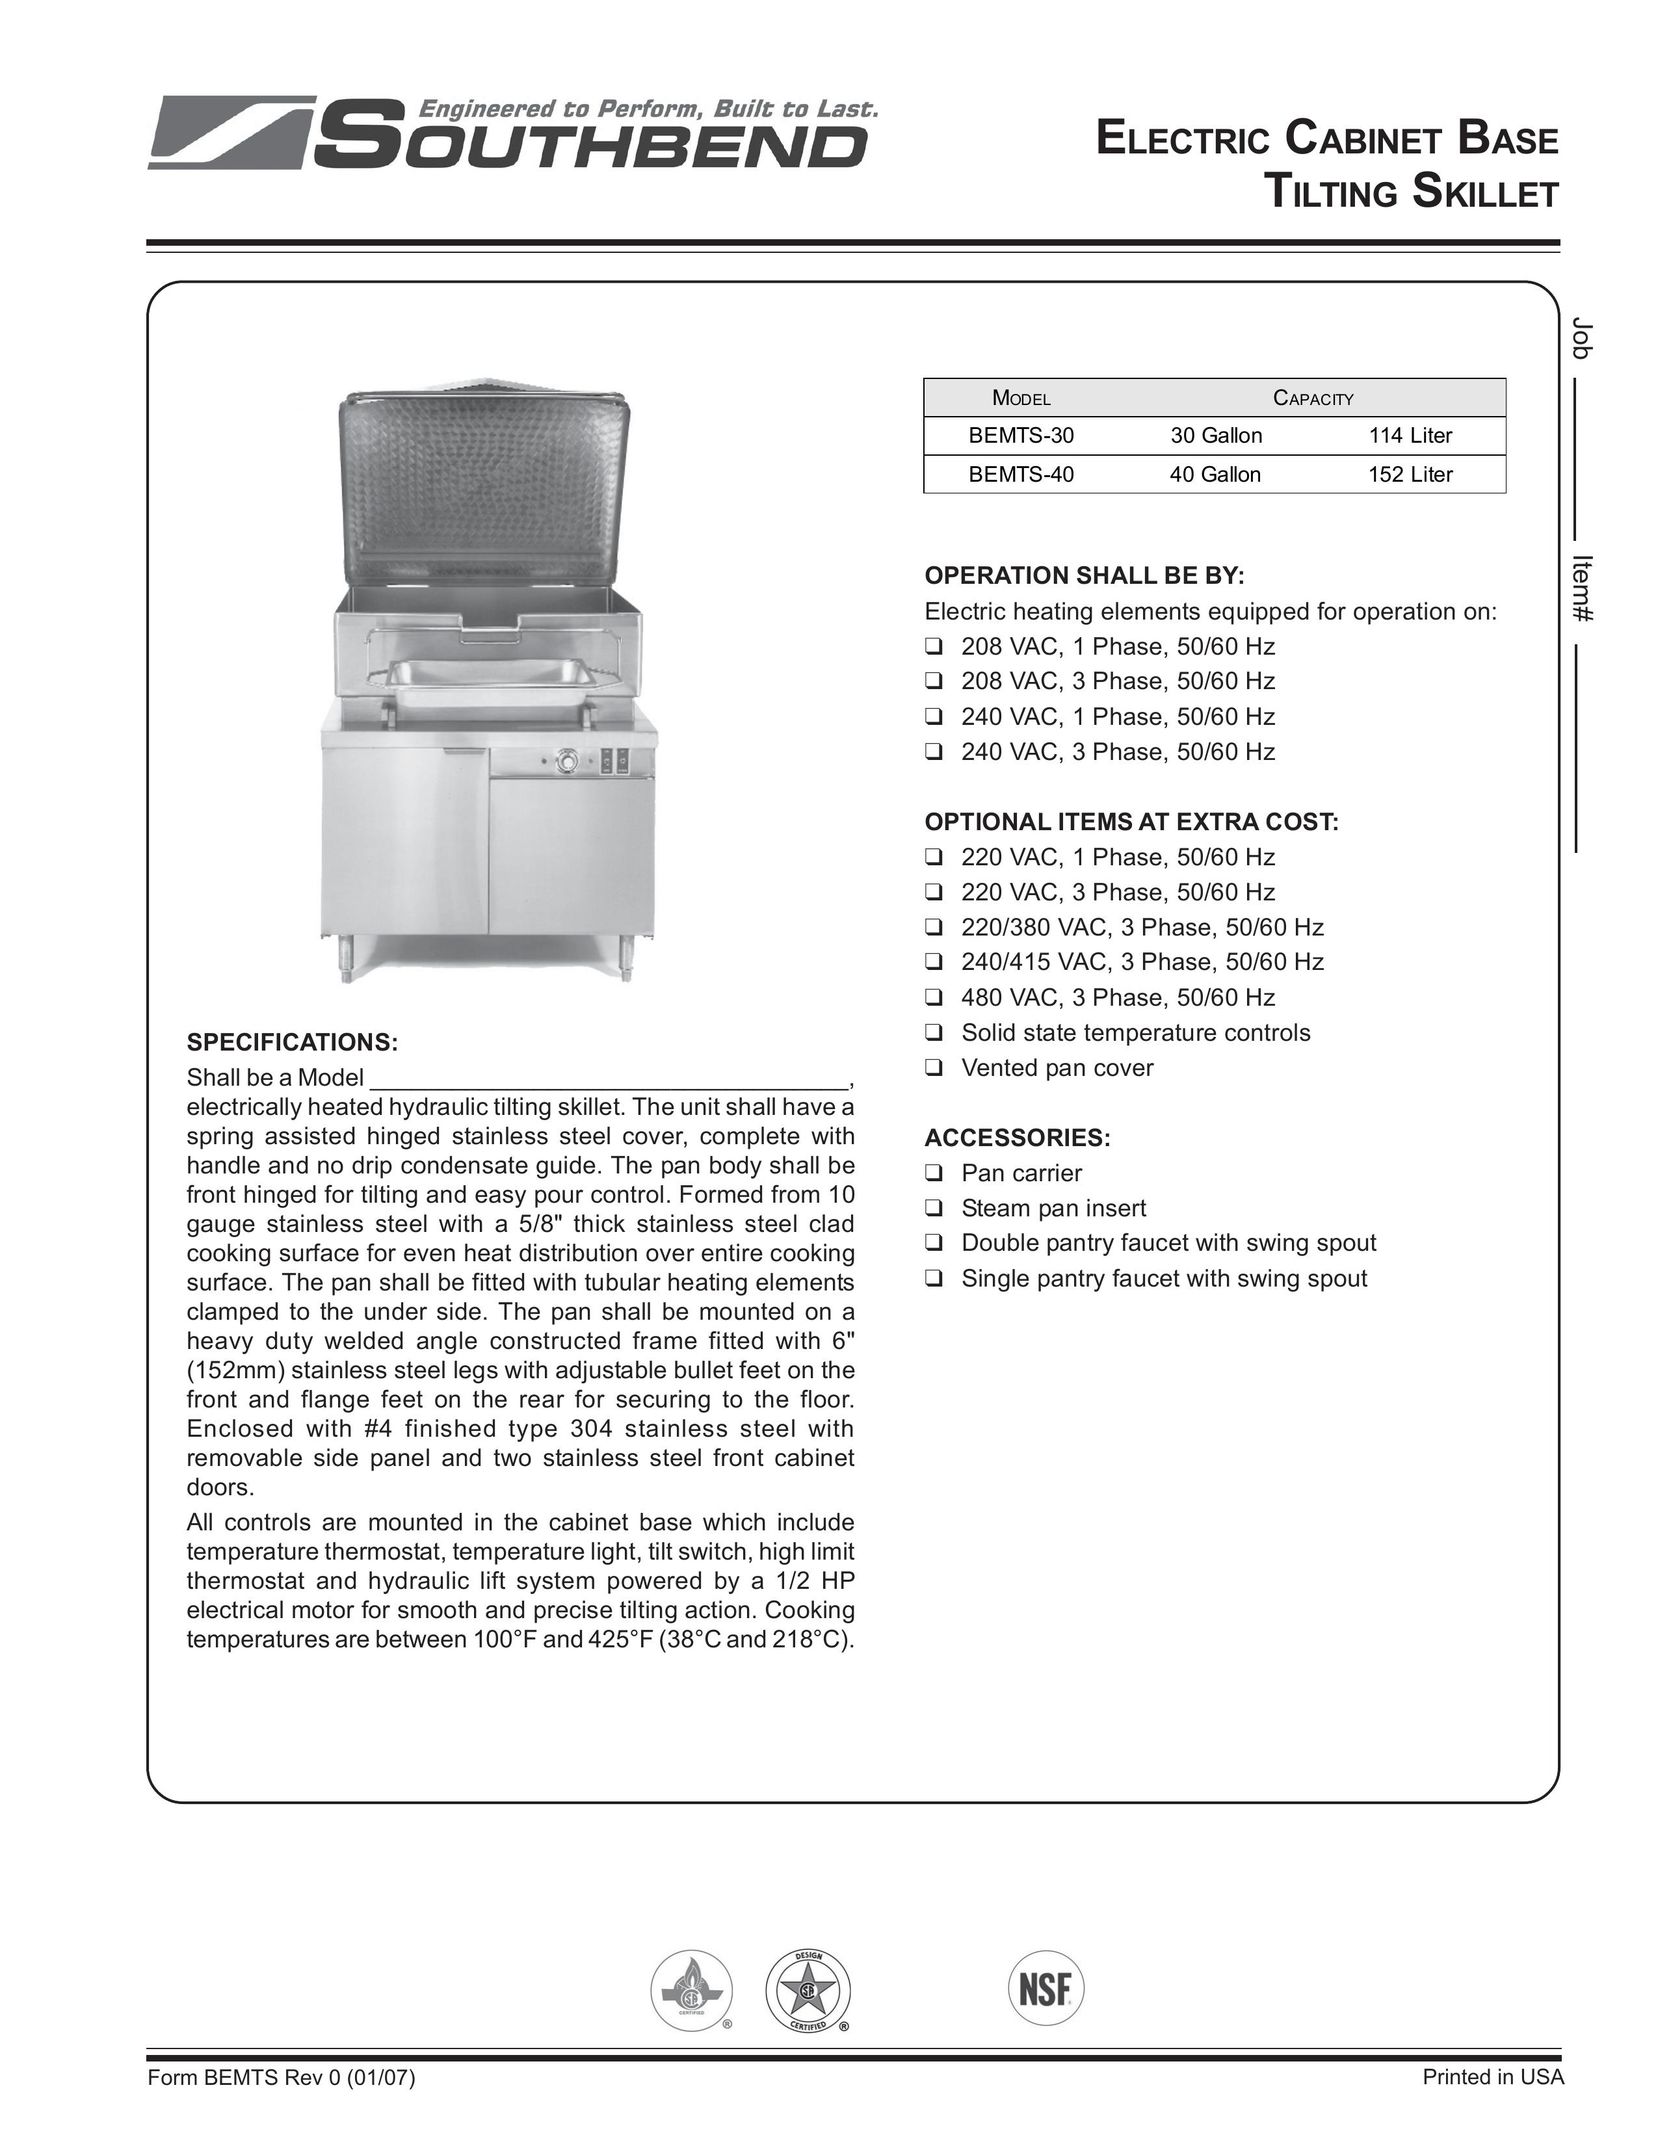 Southbend BEMTS-30 Fryer User Manual